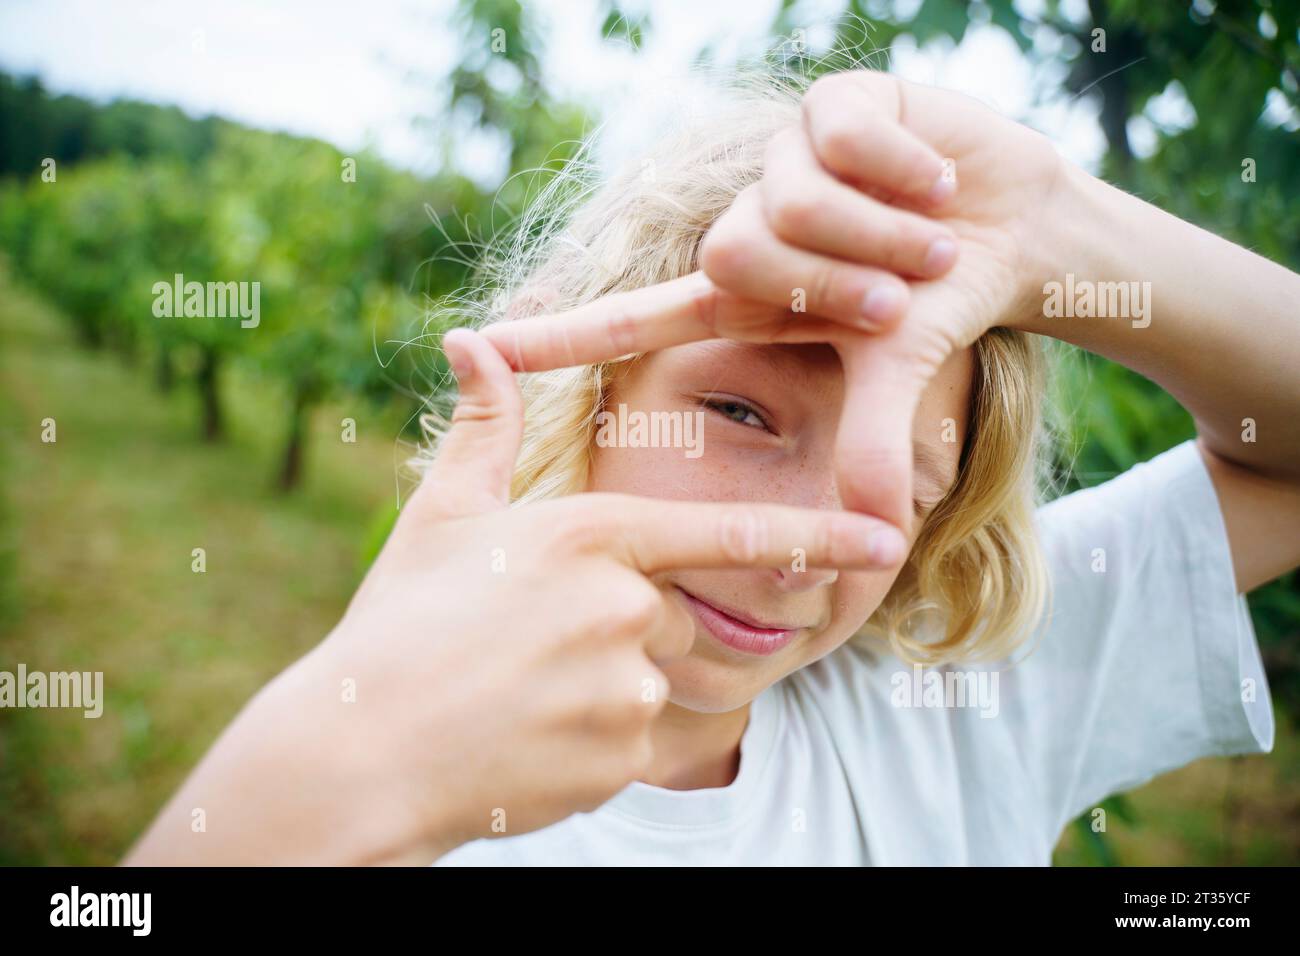 Garçon blond montrant le signe de cadre de doigt dans le jardin Banque D'Images